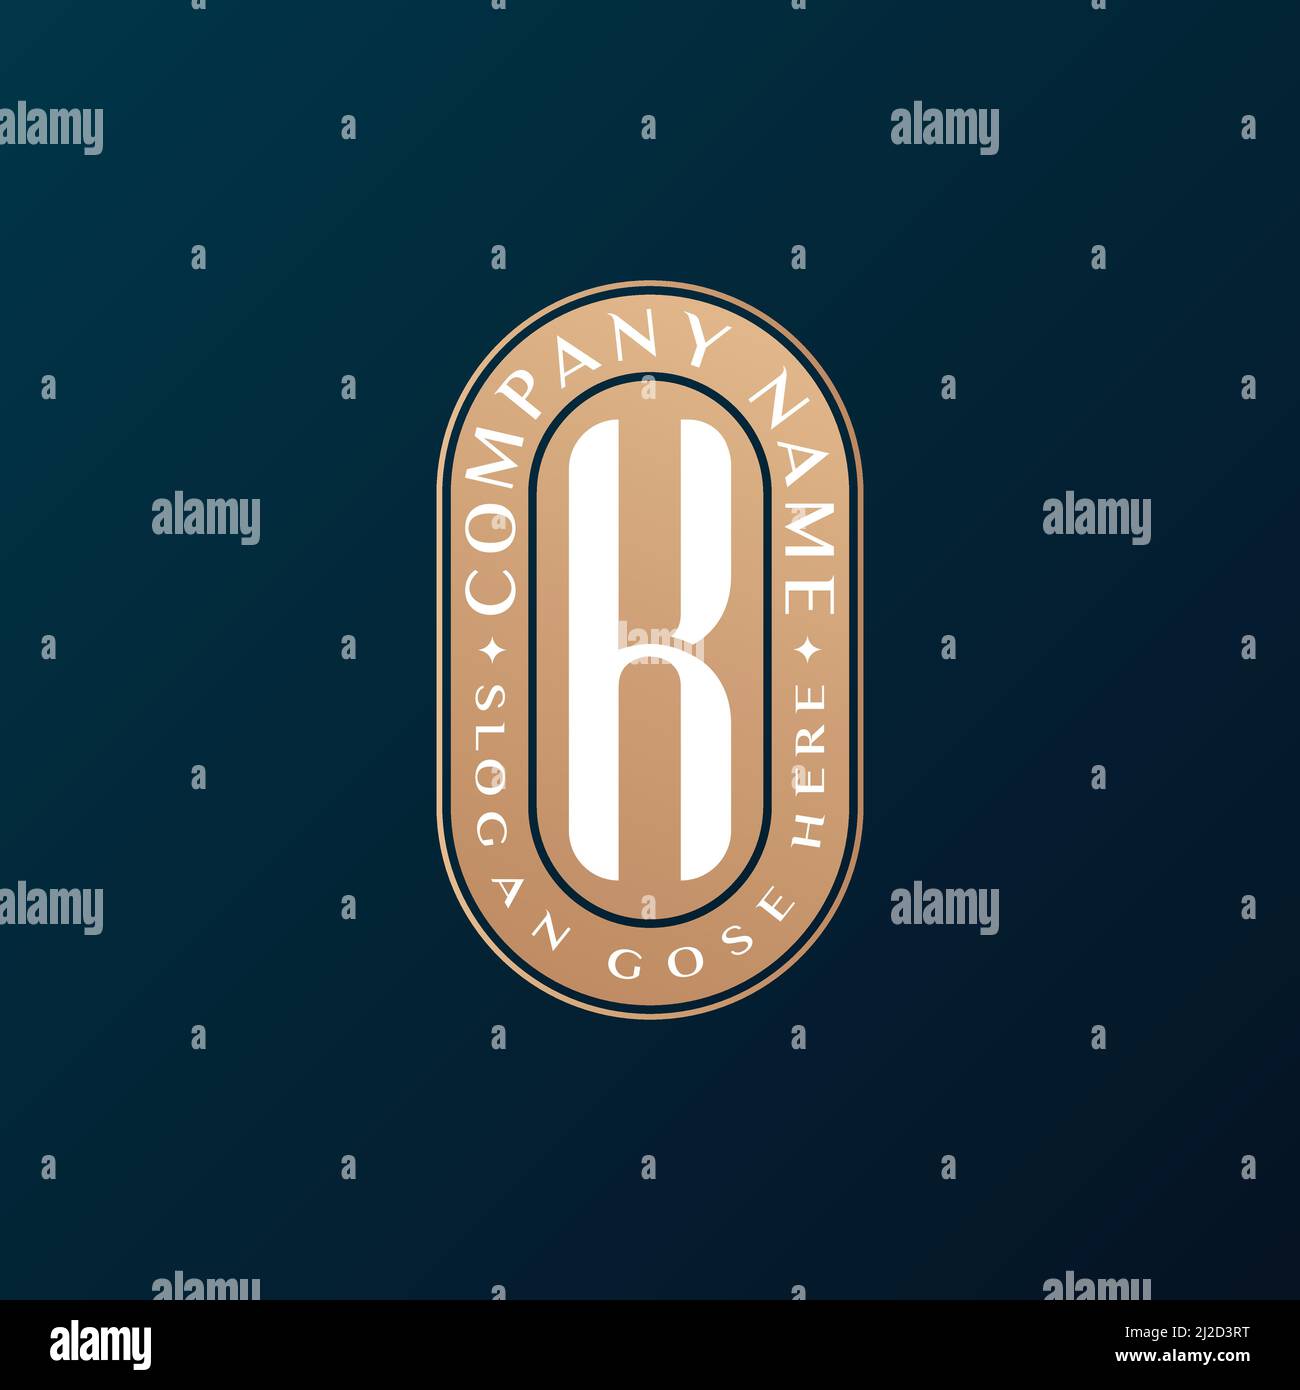 Abstrait Emblem Premium luxe identité d'entreprise élégant lettre K logo design Illustration de Vecteur